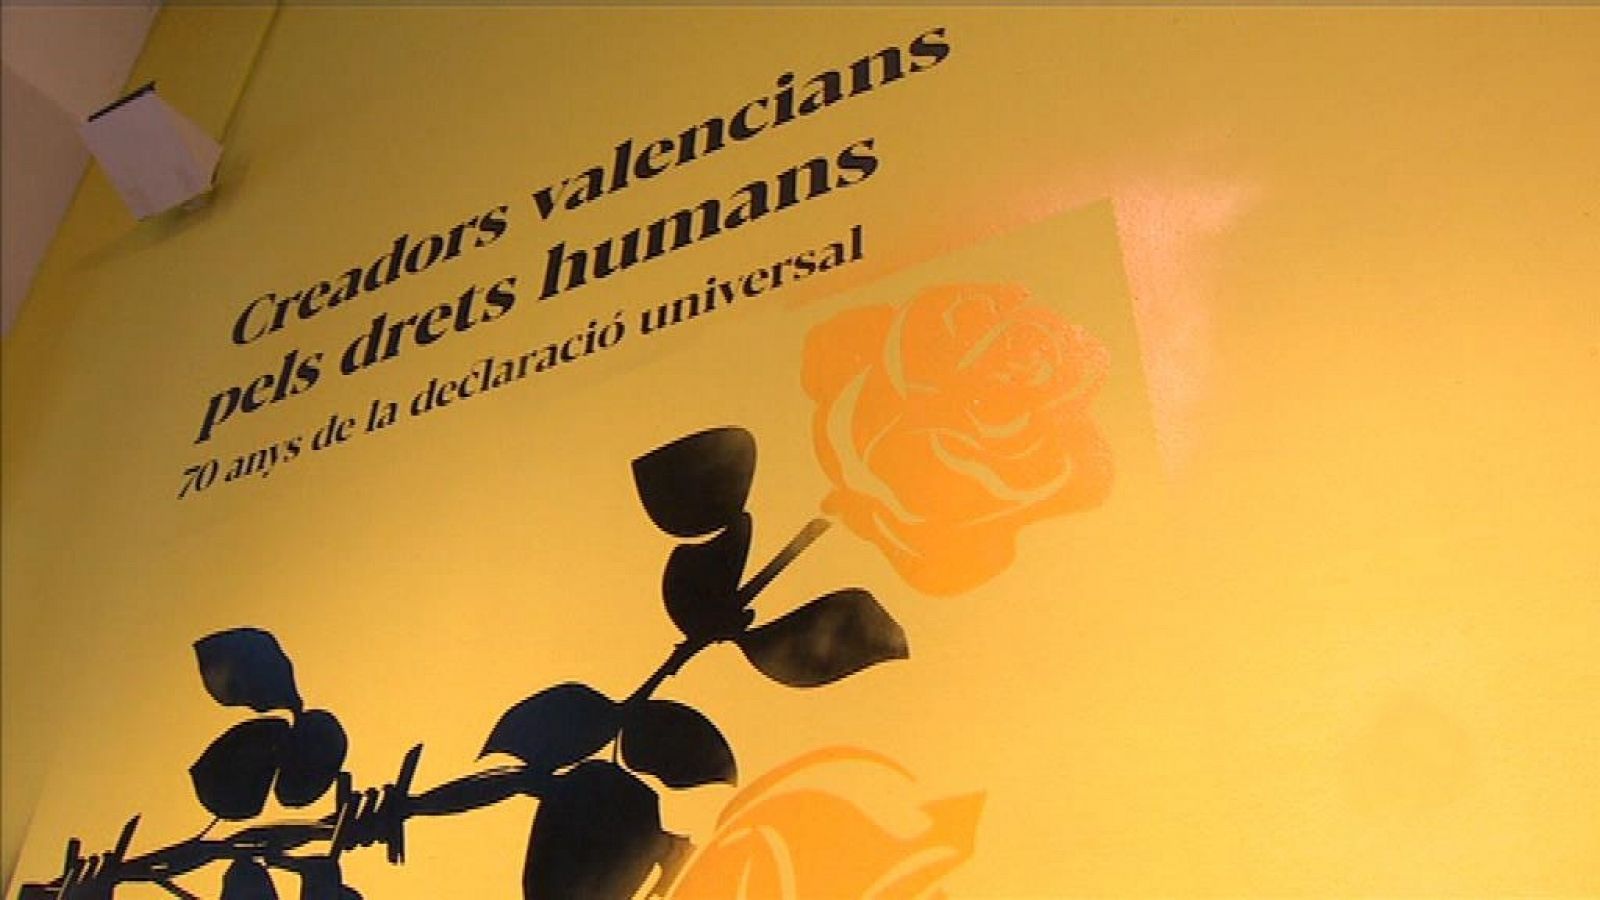 L'informatiu - Comunitat Valenciana: L'Informatiu - Comunitat Valenciana 2 - 29/11/18 | RTVE Play